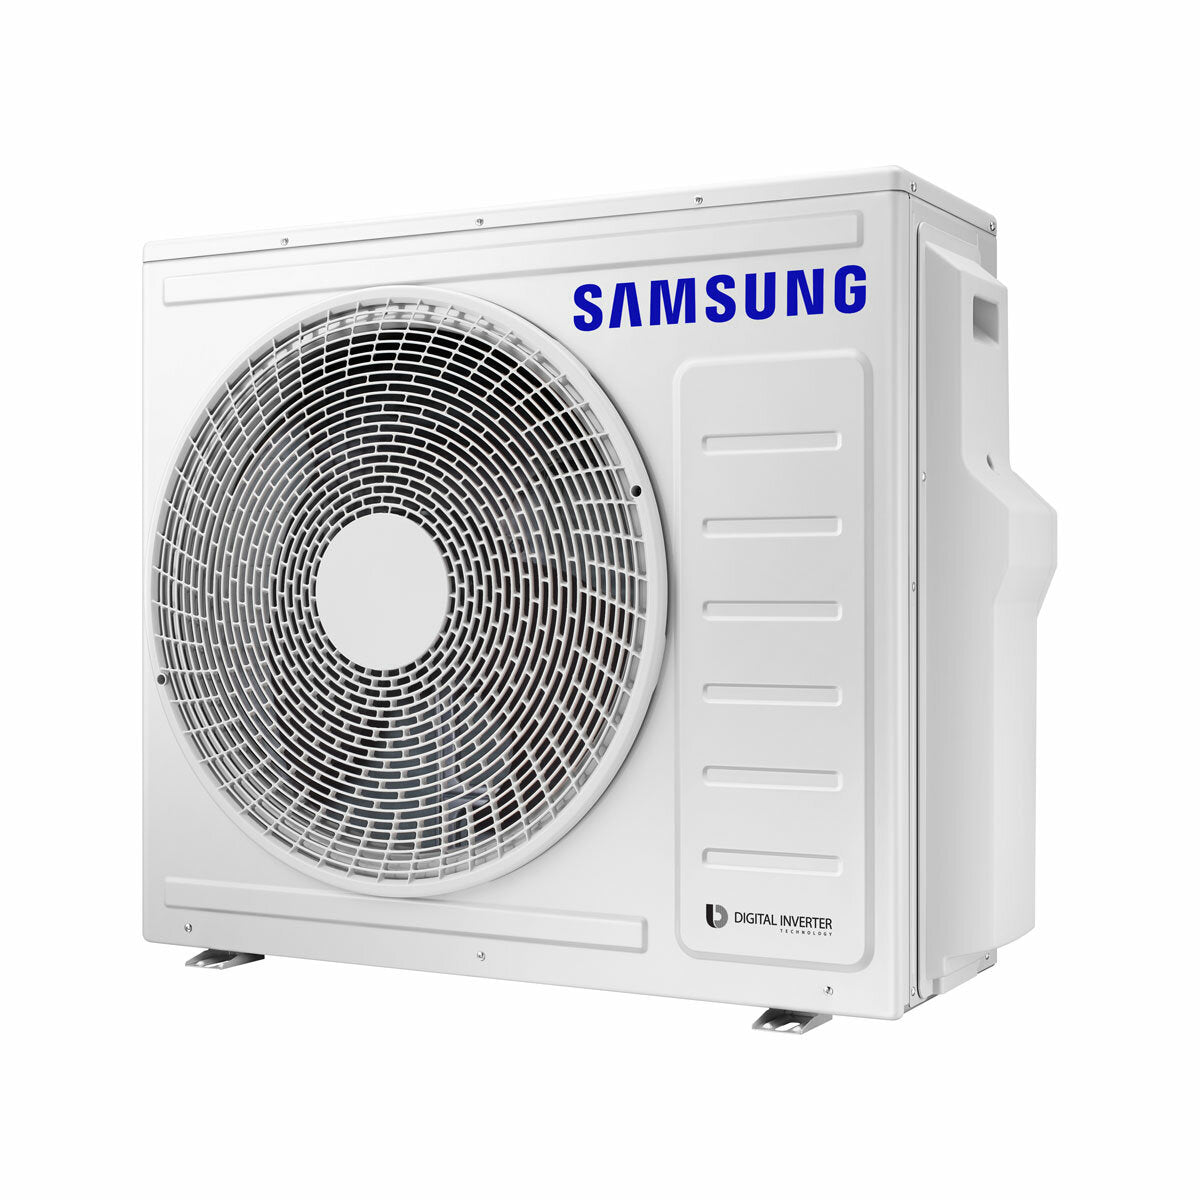 Samsung Klimaanlage Windfree 4-Wege Trial Split 7000 + 12000 + 12000 BTU Inverter A++ Außengerät 6,8 kW